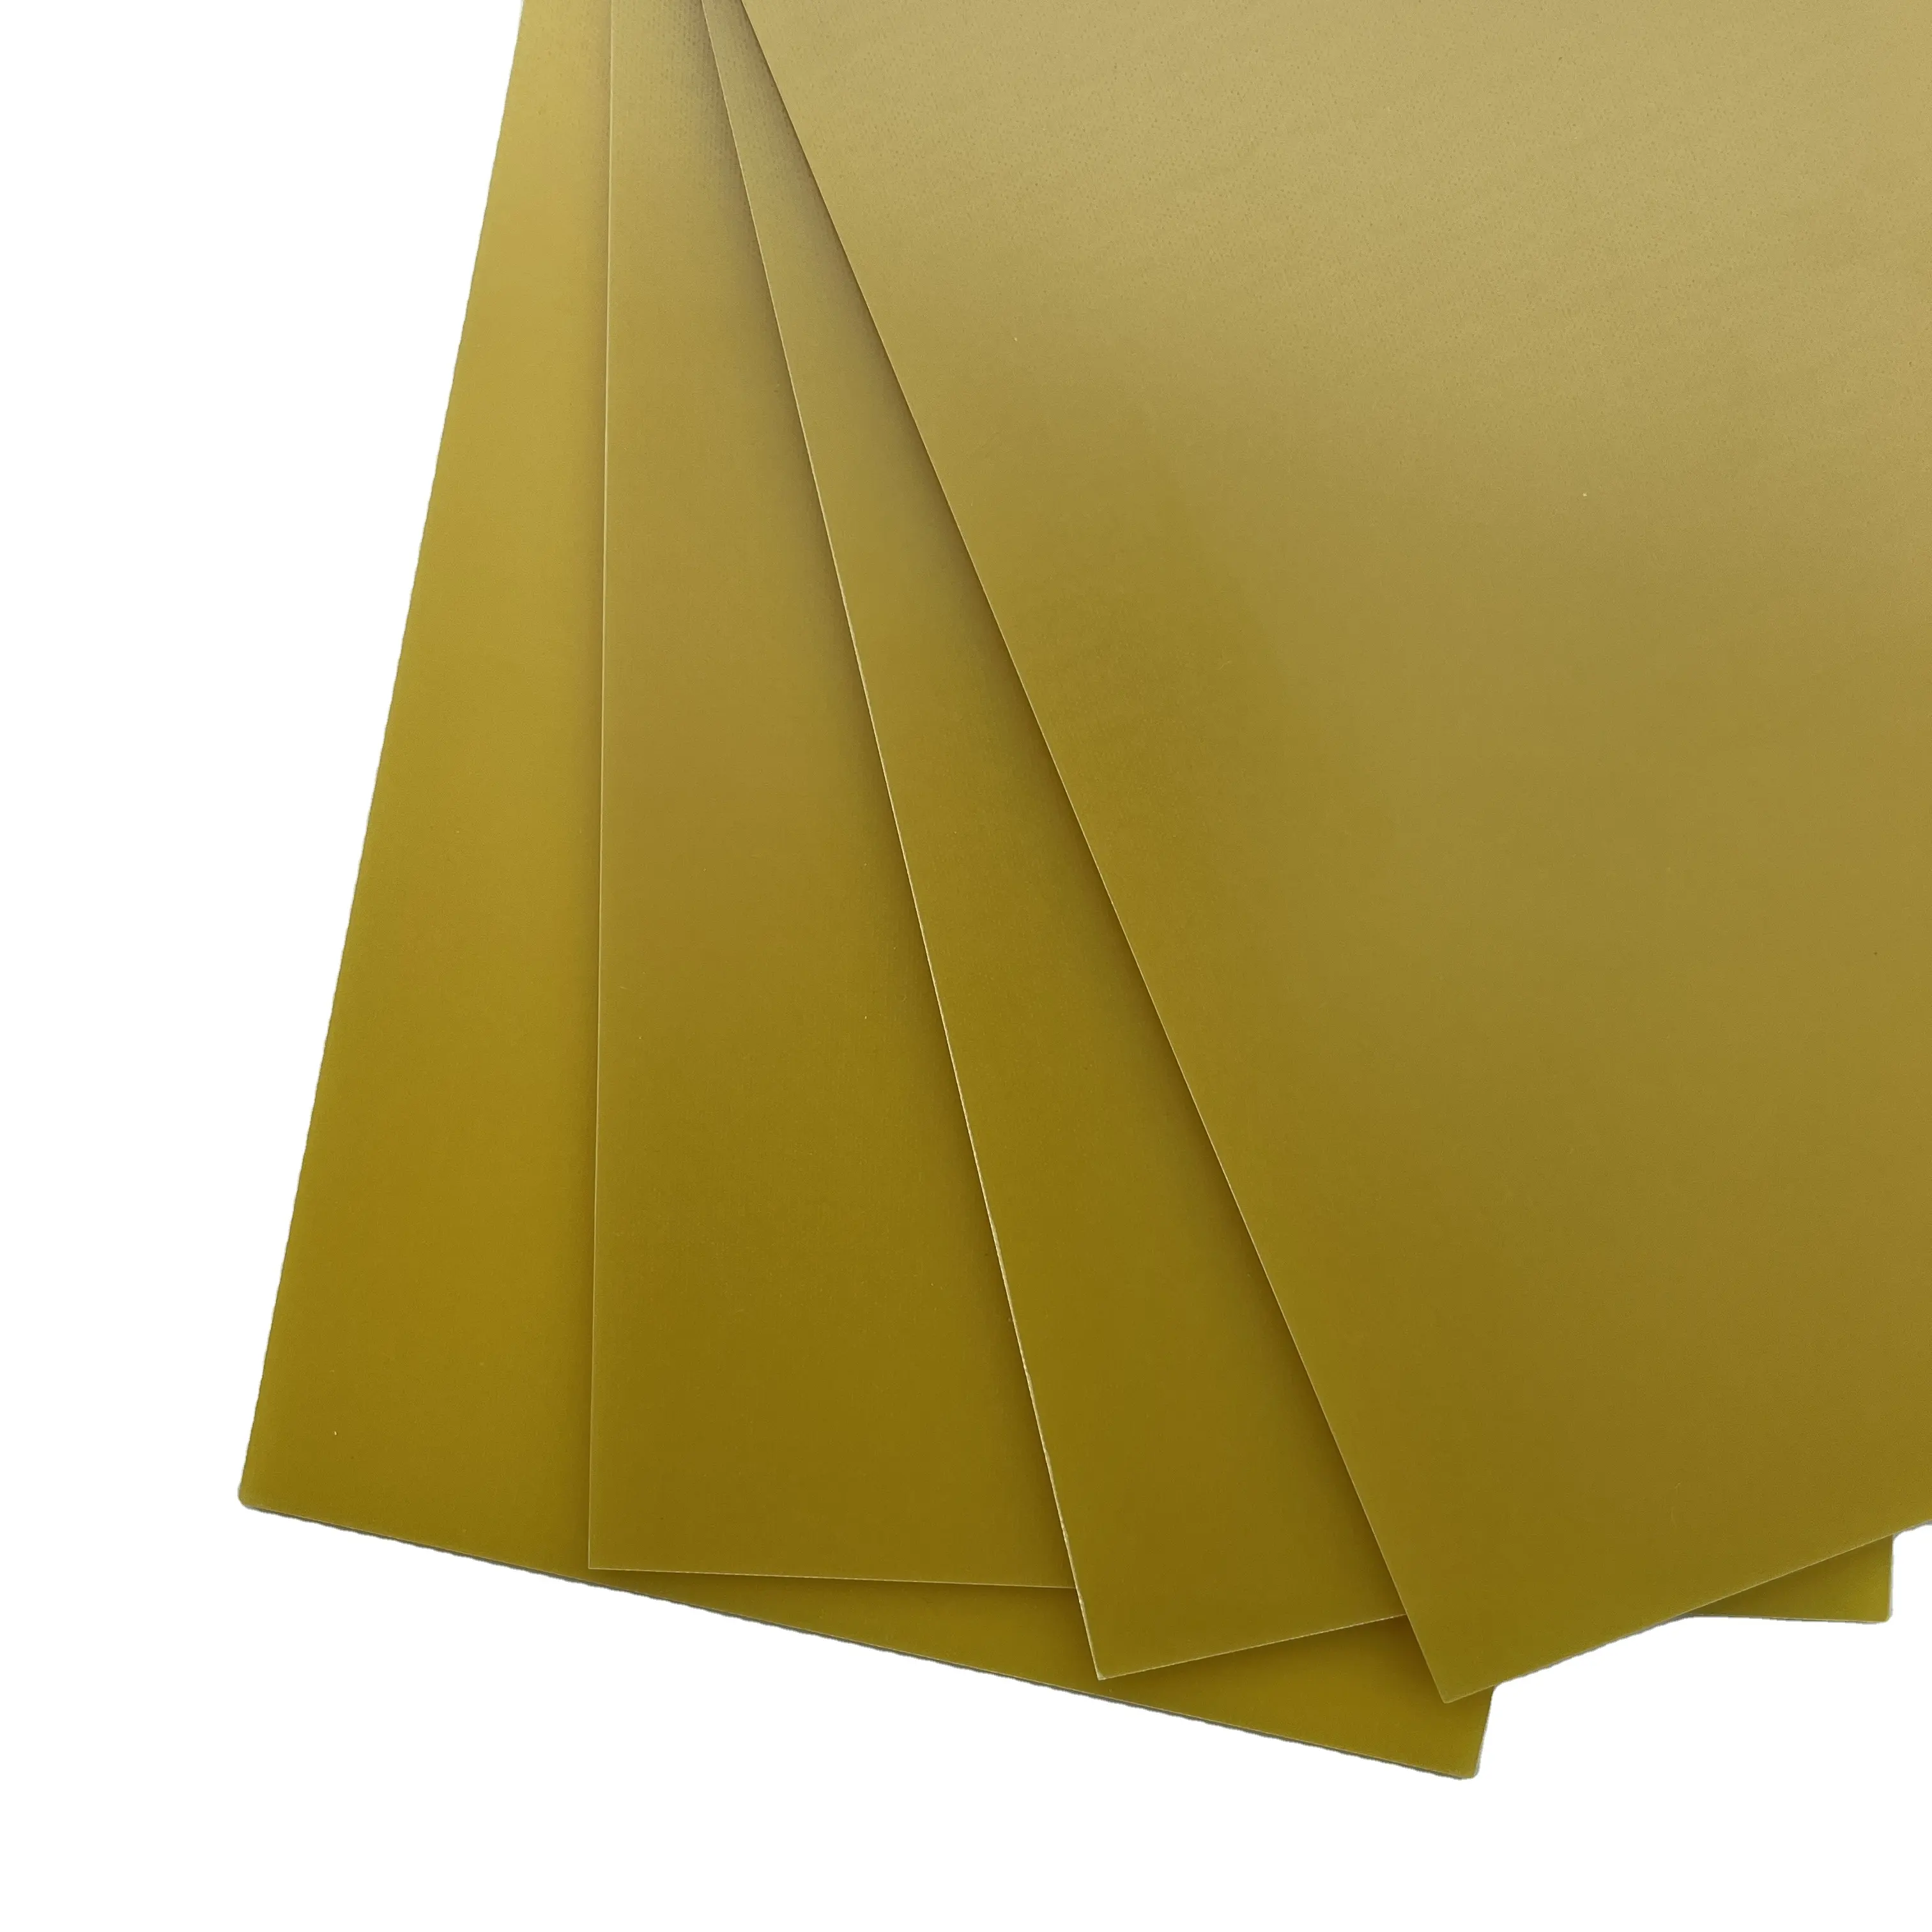 कारखाने में 4 पीले एपॉक्सी राल बोर्ड 5.0 मिमी और फाइबरग्लास बोर्ड 5.0 मिमी के उत्पादन में माहिर है।